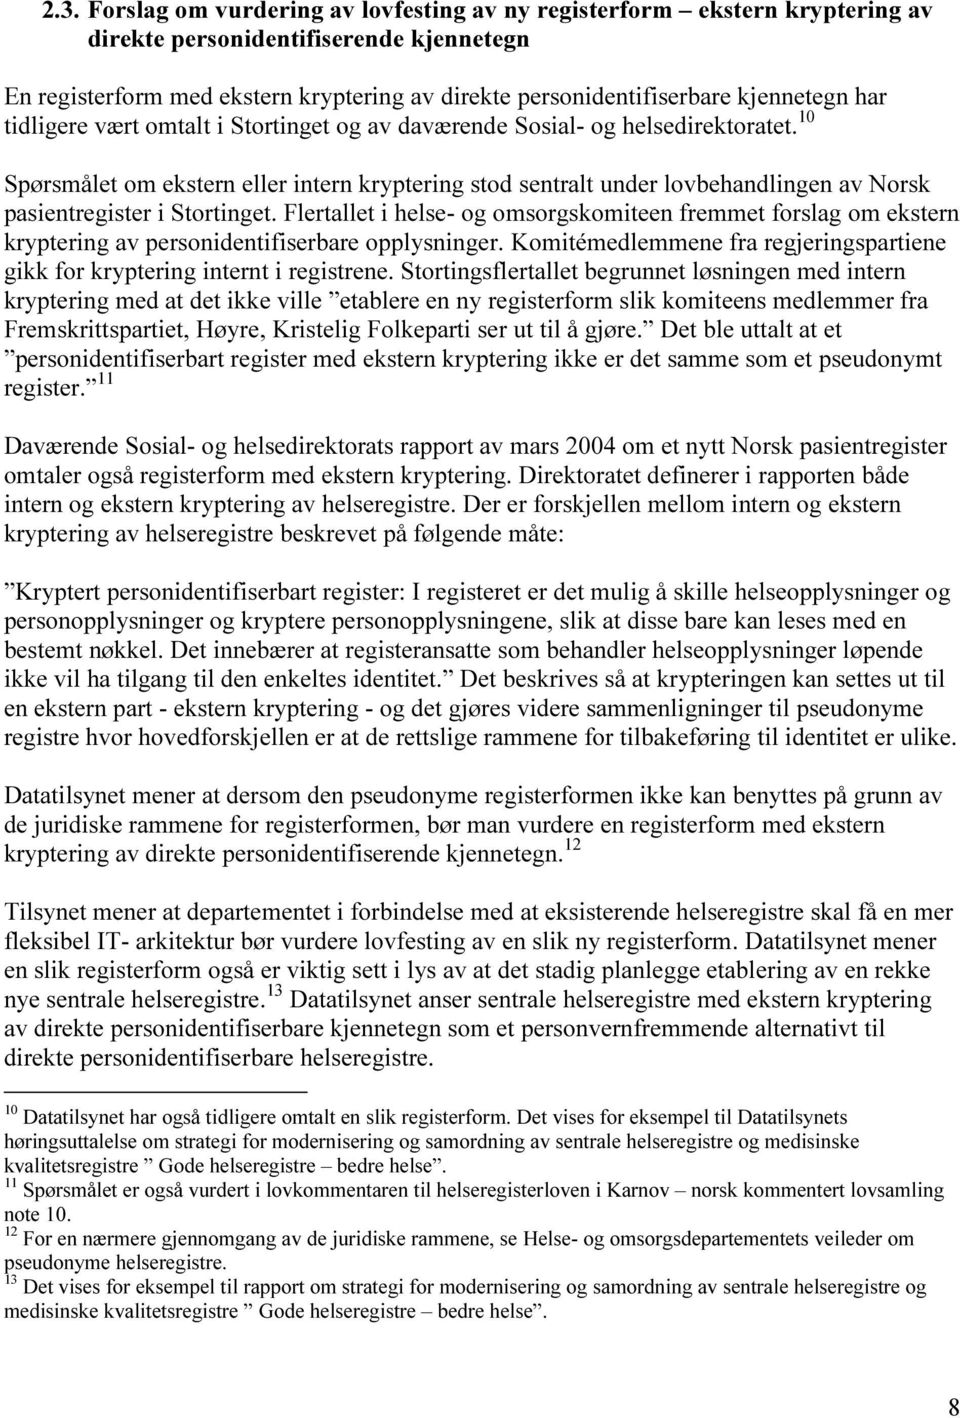 10 Spørsmålet om ekstern eller intern kryptering stod sentralt under lovbehandlingen av Norsk pasientregister i Stortinget.